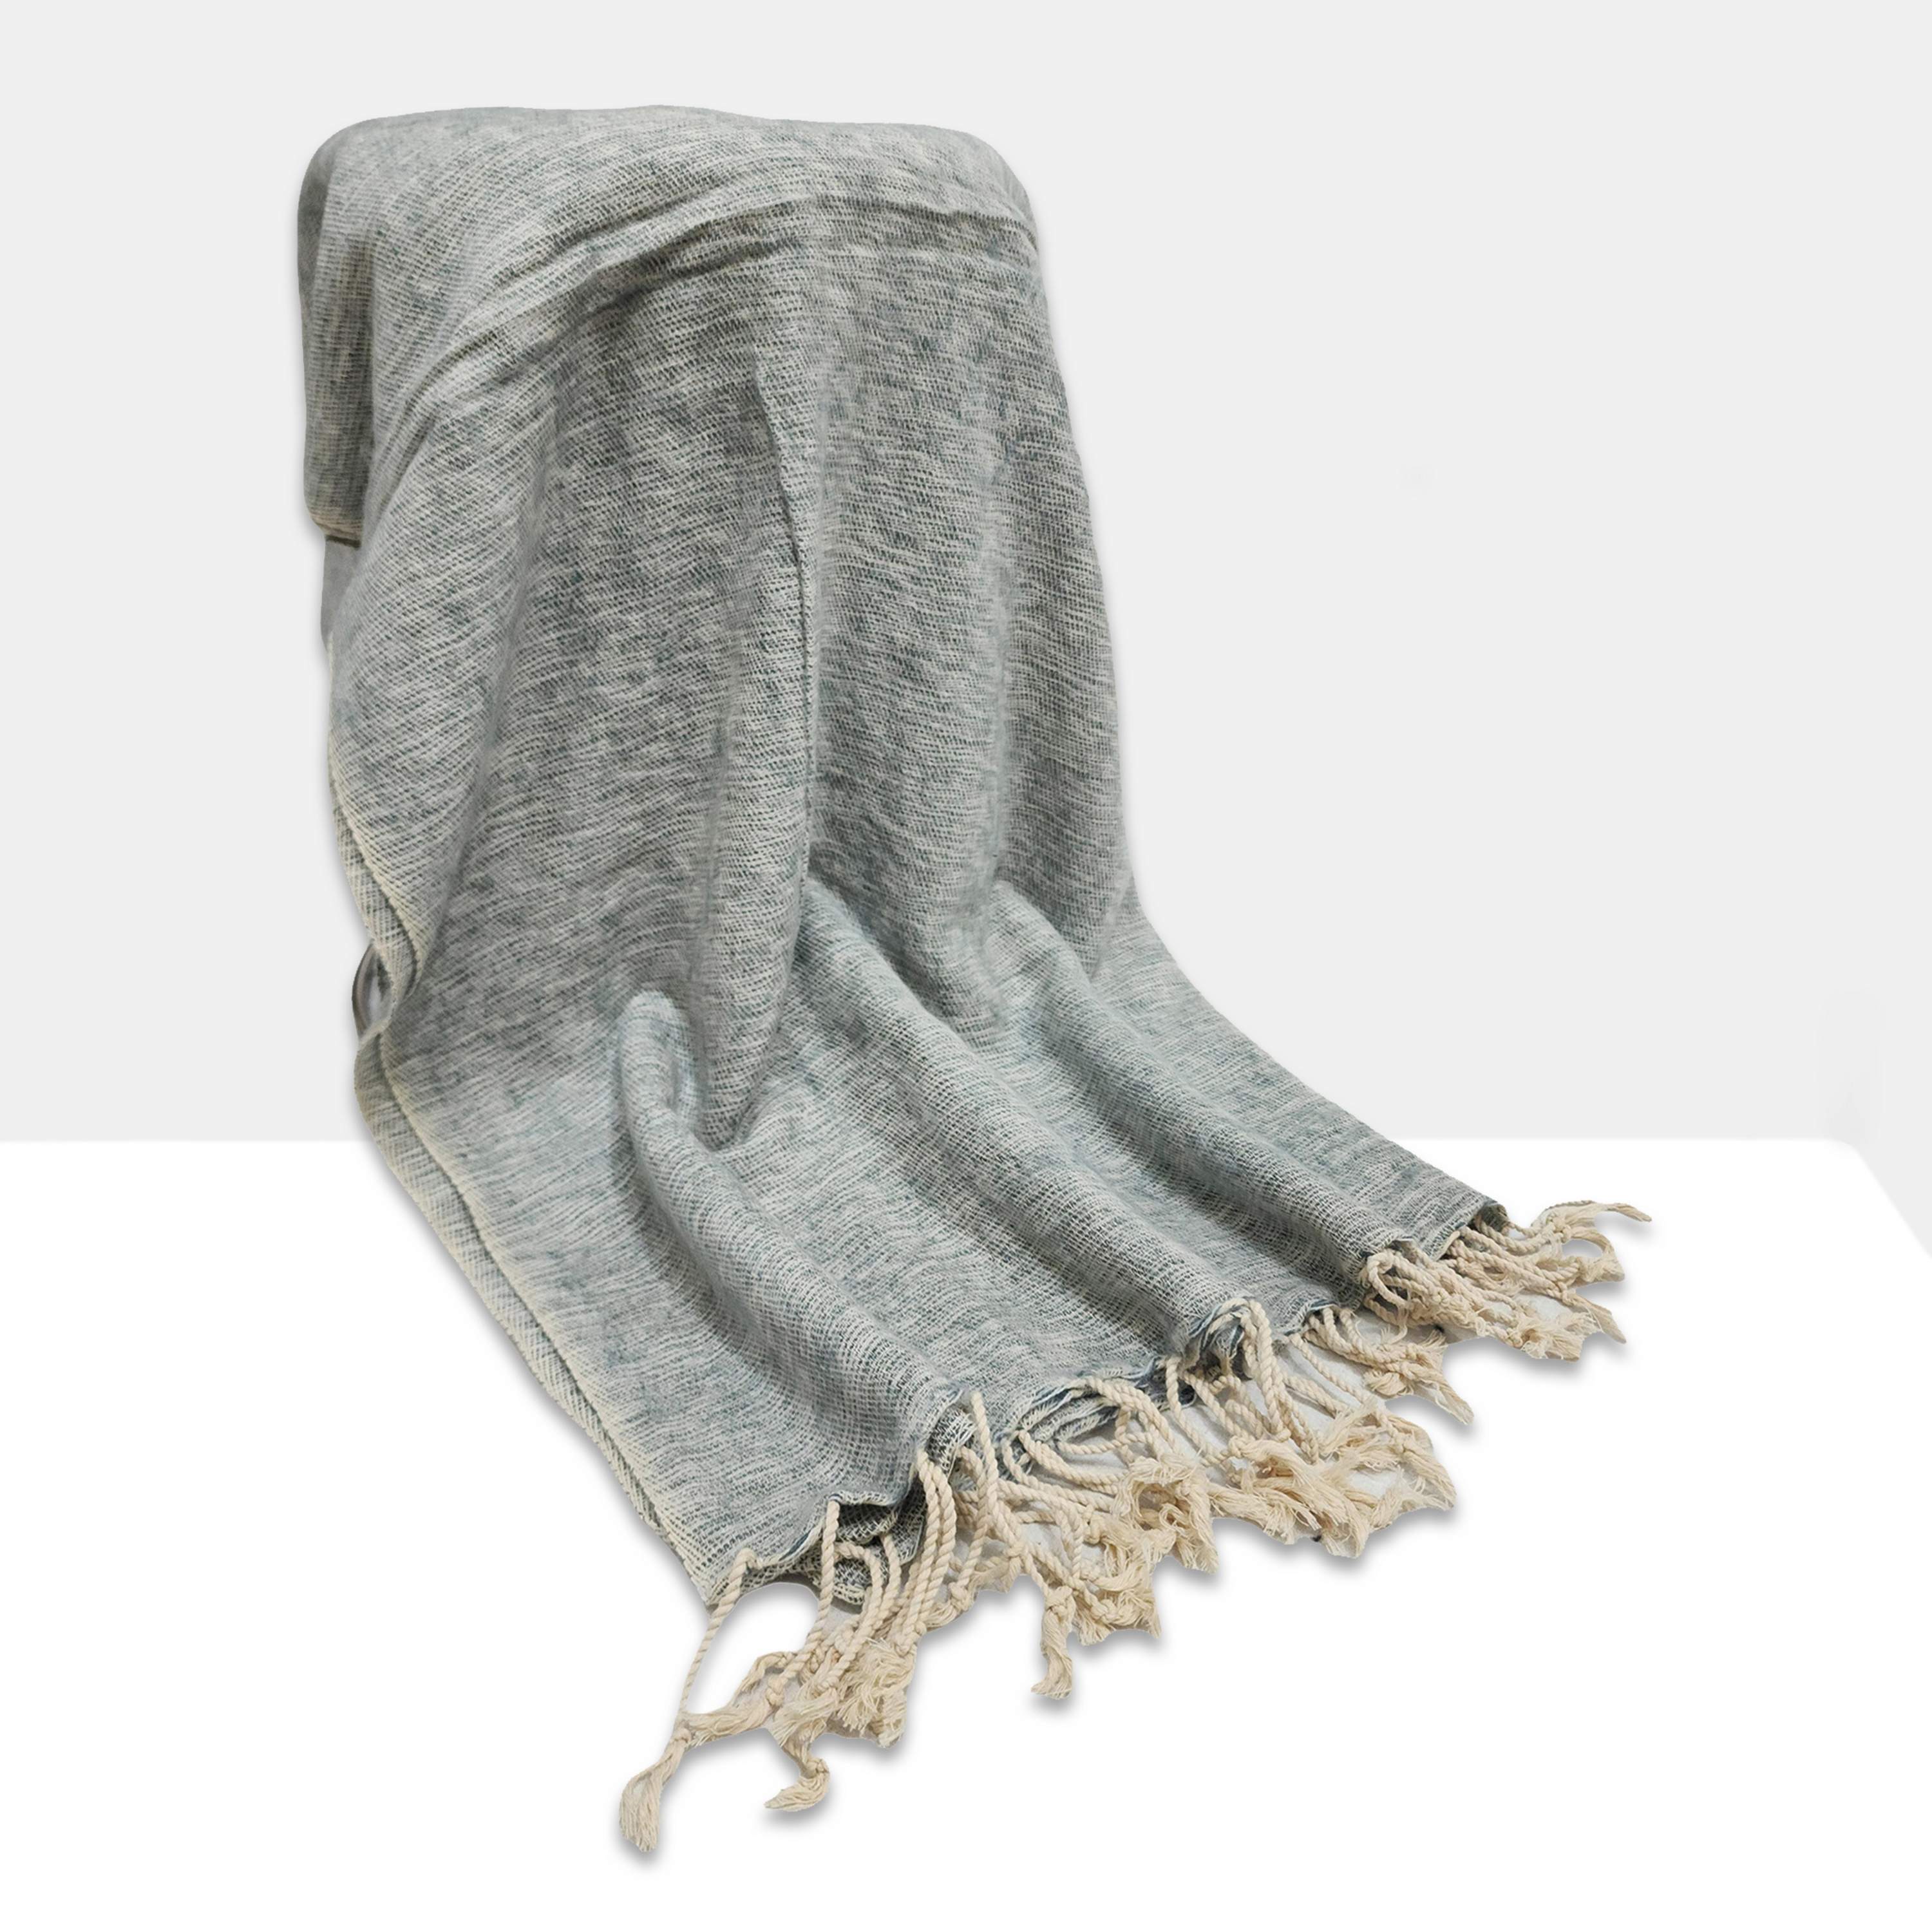 Yak Wool Blanket, Nepali Acrylic Hand Loom Blanket, Color gray